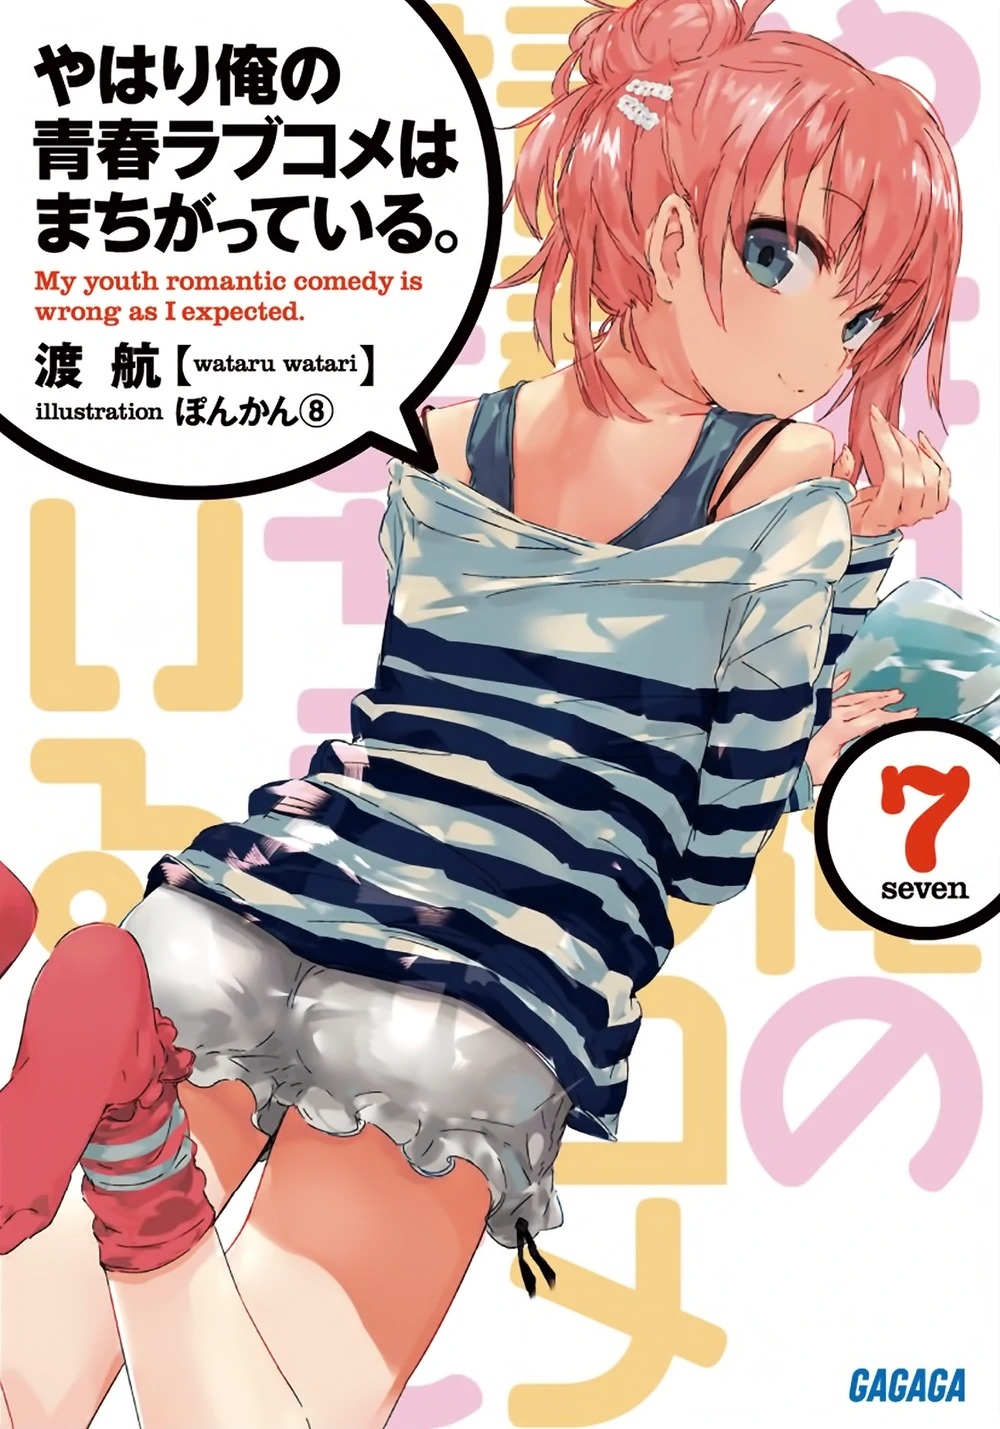 [light novel] yahari ore no seishun love come wa machigatteiru illust compliation 85